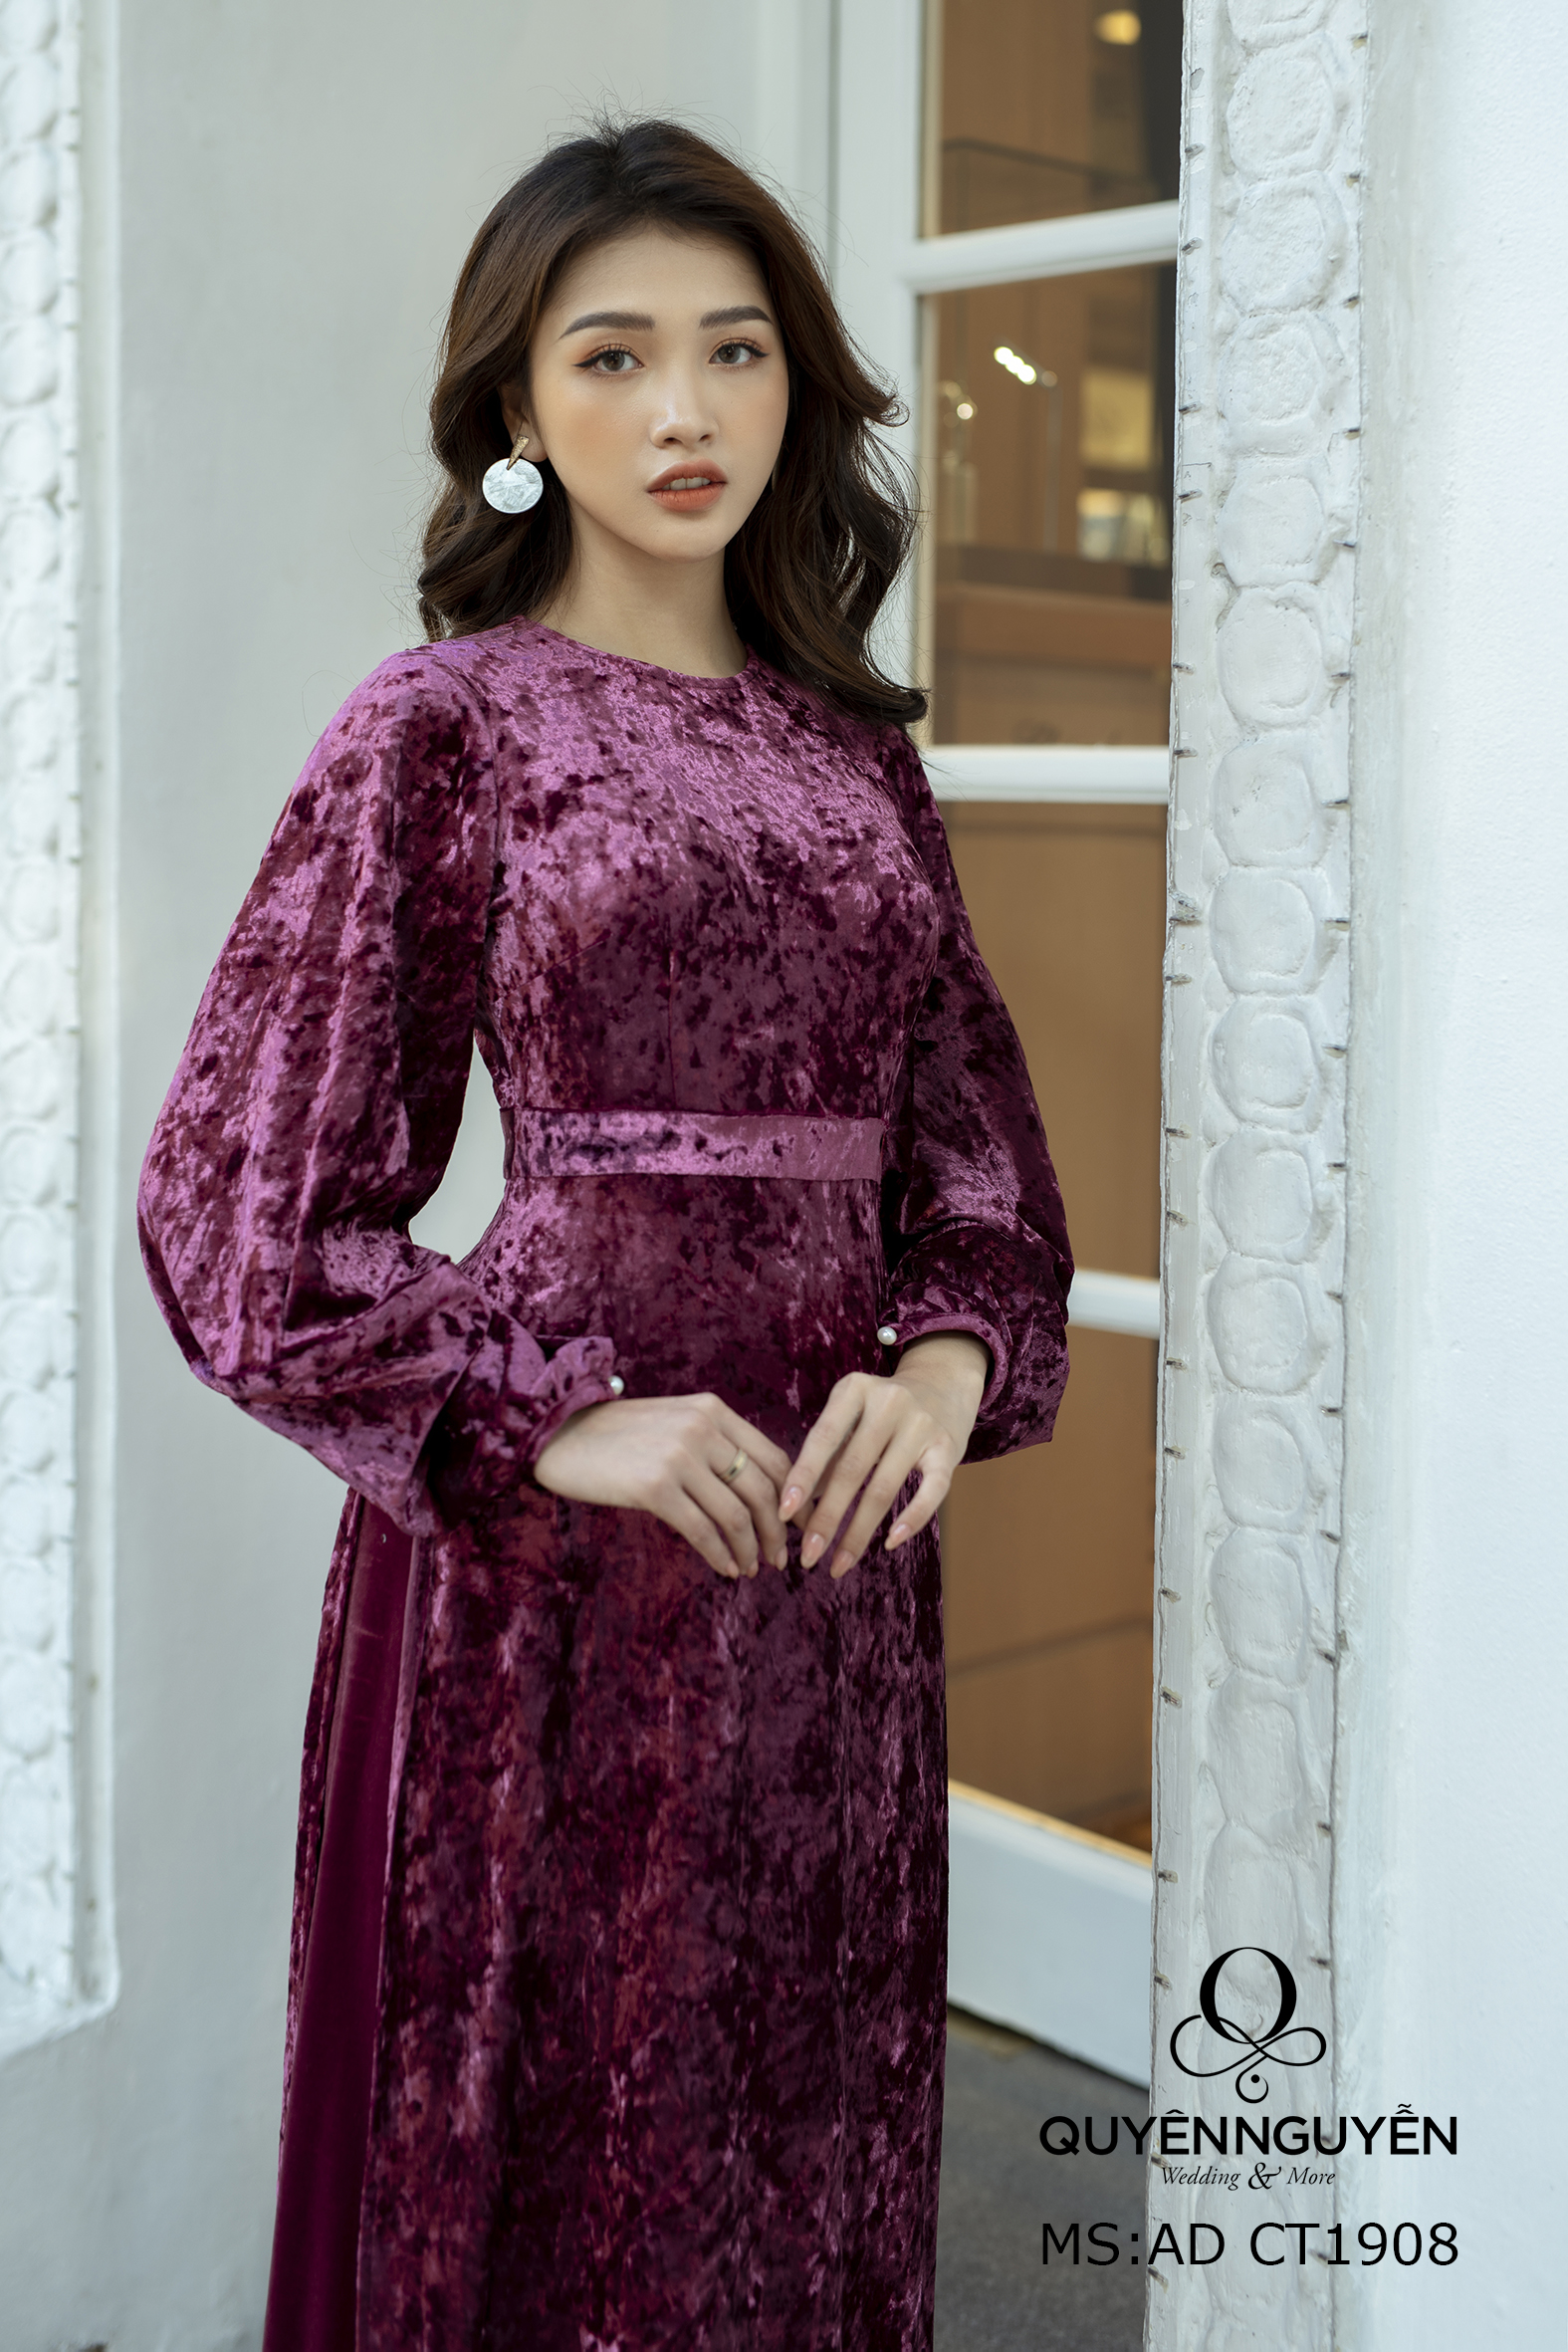 Dù ăn mặc đôi khi hơi nhàm chán nhưng hoa hậu Đặng Thu Thảo vẫn khéo léo  chọn phụ kiện cực phẩm